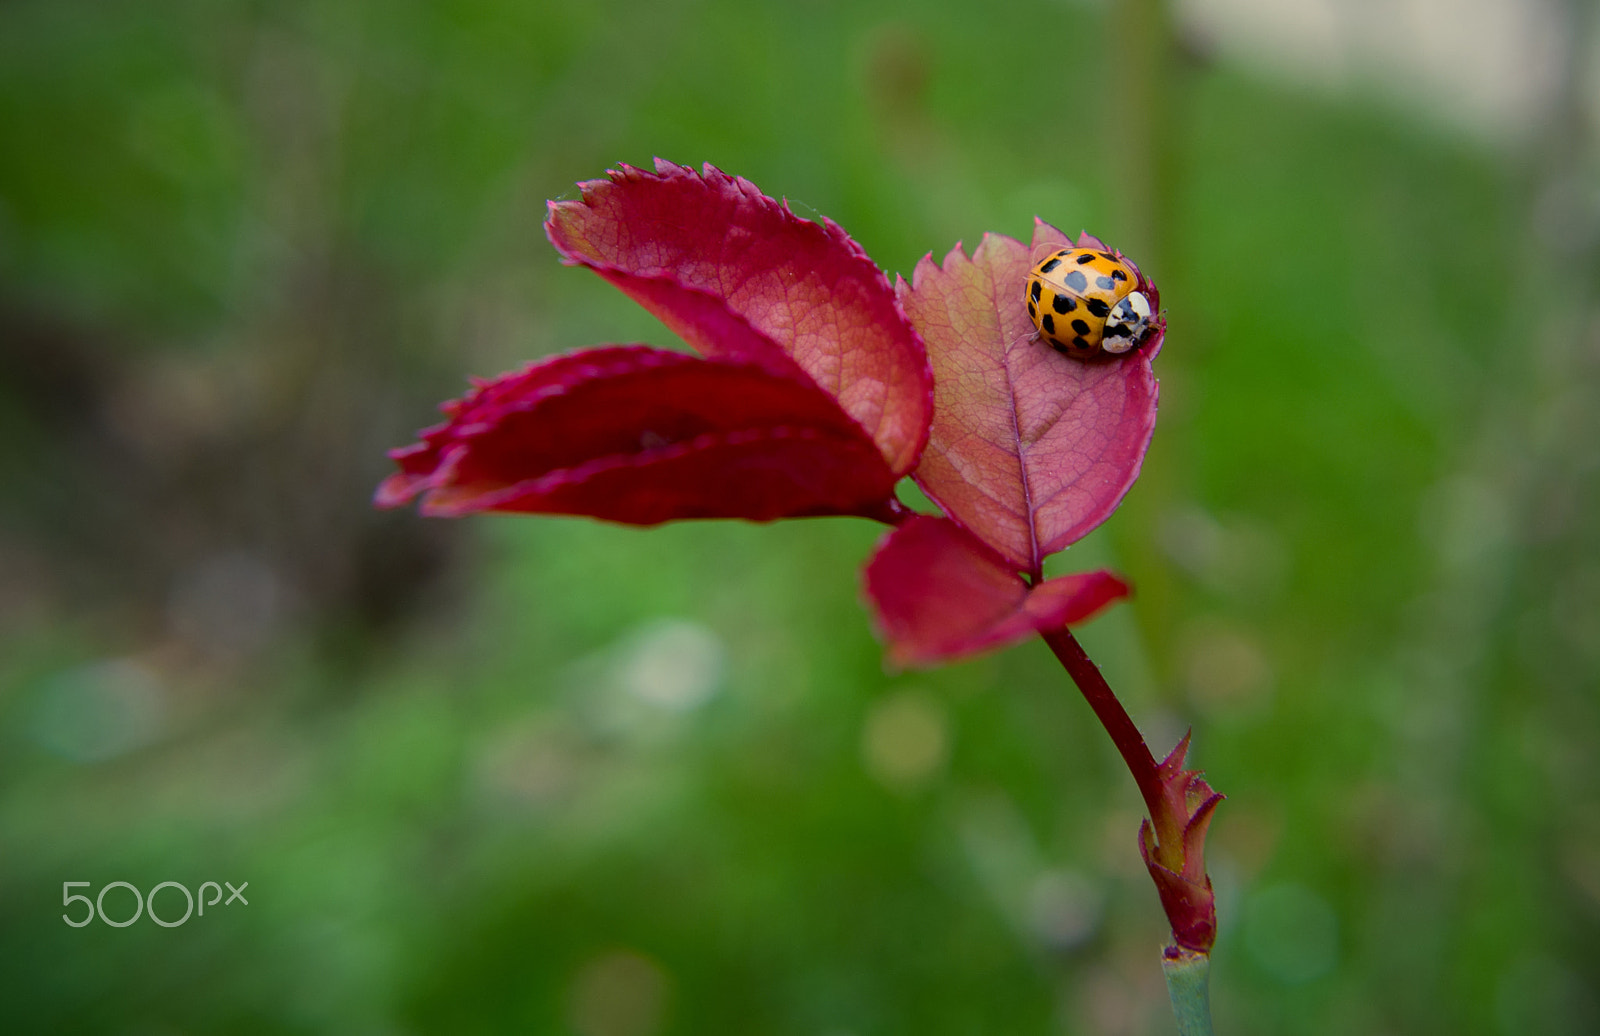 Pentax K-x sample photo. Ladybug on flower photography